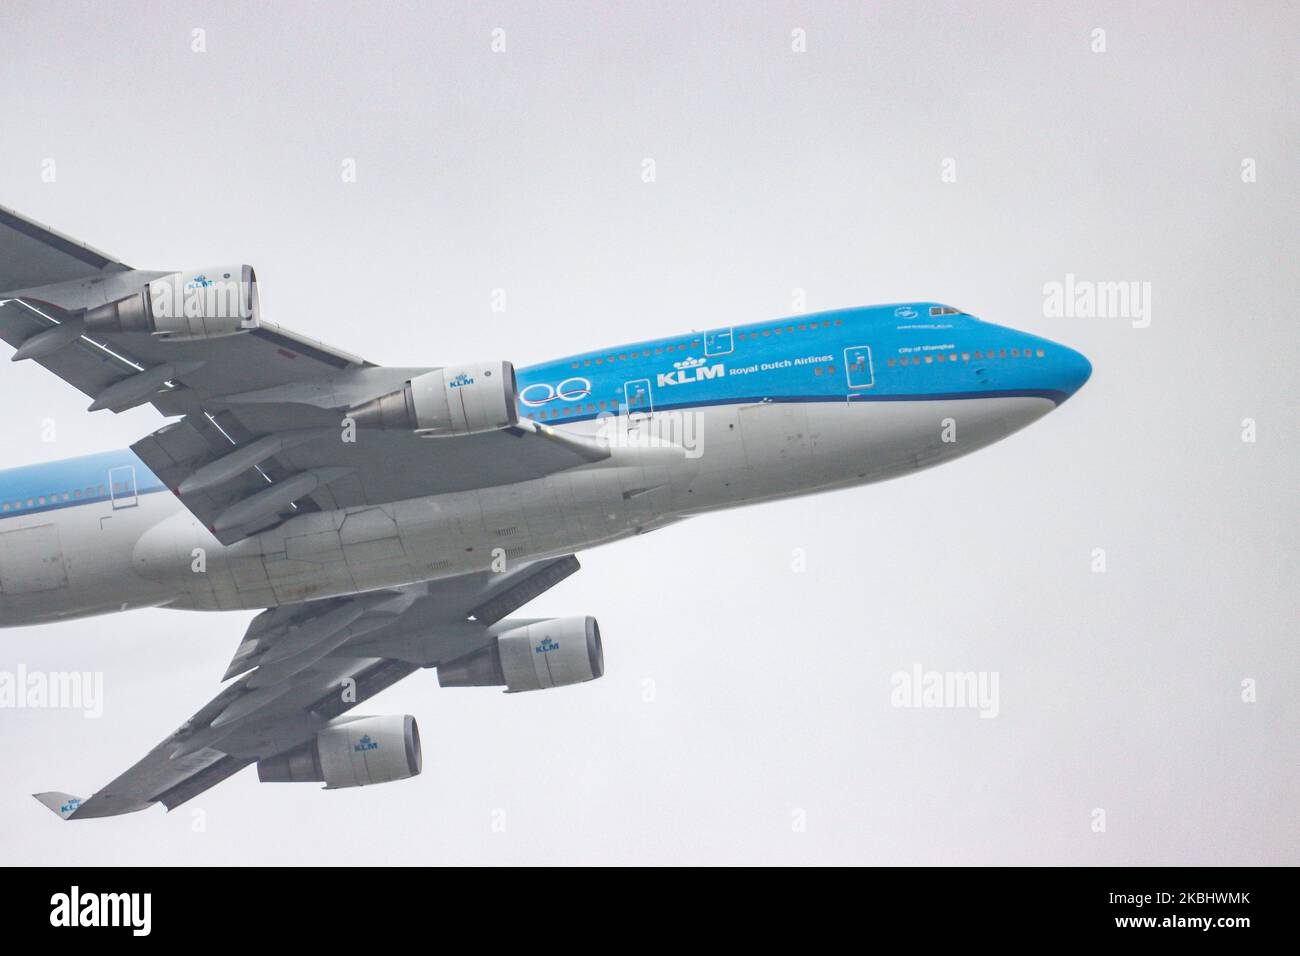 KLM Royal Dutch Airlines Boeing 747-400m-Flugzeuge, die während eines Sturms in den Wolken abfliegen, in der Luft fliegen, während sie die Fahrwerksräder mit ausgefahrenen Klappen am KLM-Hub Amsterdam Schiphol AMS EHAM in den Niederlanden zurückfahren. Das Flugzeug hat die Registrierung PH-BFW, hat den Namen Shanghai / City of Shanghai und wird von 4x GE-Triebwerken angetrieben. Das Doppeldecker-Großraumflugzeug, das für Langstreckenflüge gemacht wurde und den Spitznamen „Queen of the Skies“ oder „Jumbo Jet“ trägt, ist eine spezielle Kombivariante, eine Kombination aus Passagier- und Frachtflugzeug. KLM KL ist Mitglied der skyteam Aviation allia Stockfoto